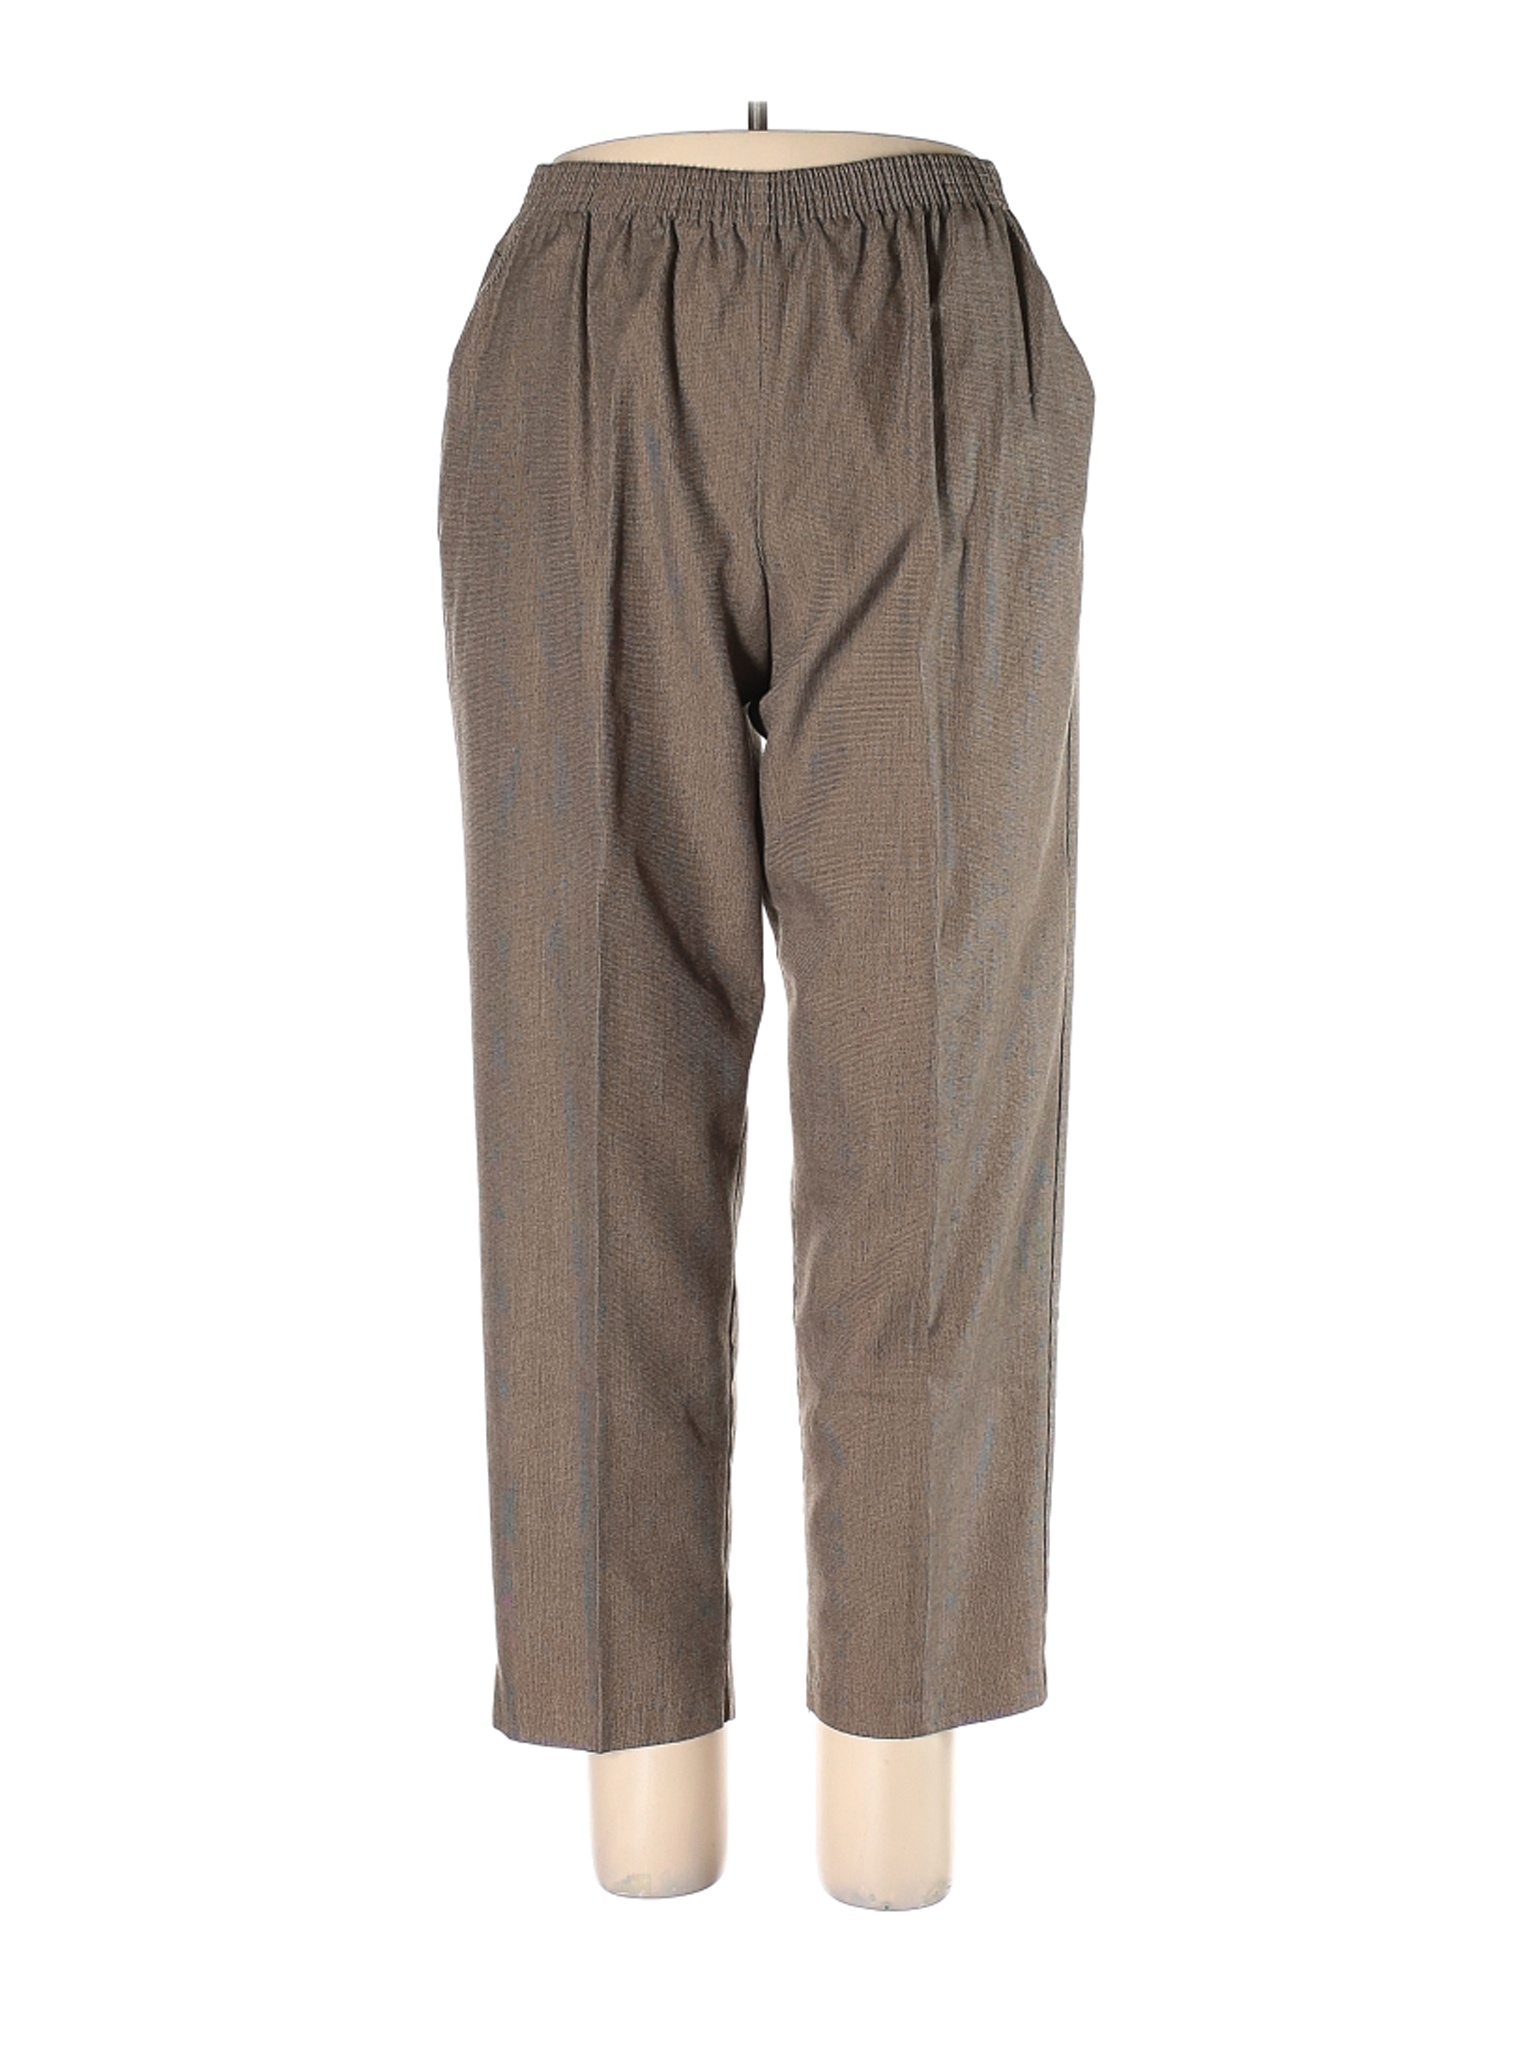 Briggs New York Women Brown Casual Pants 16 Petites | eBay